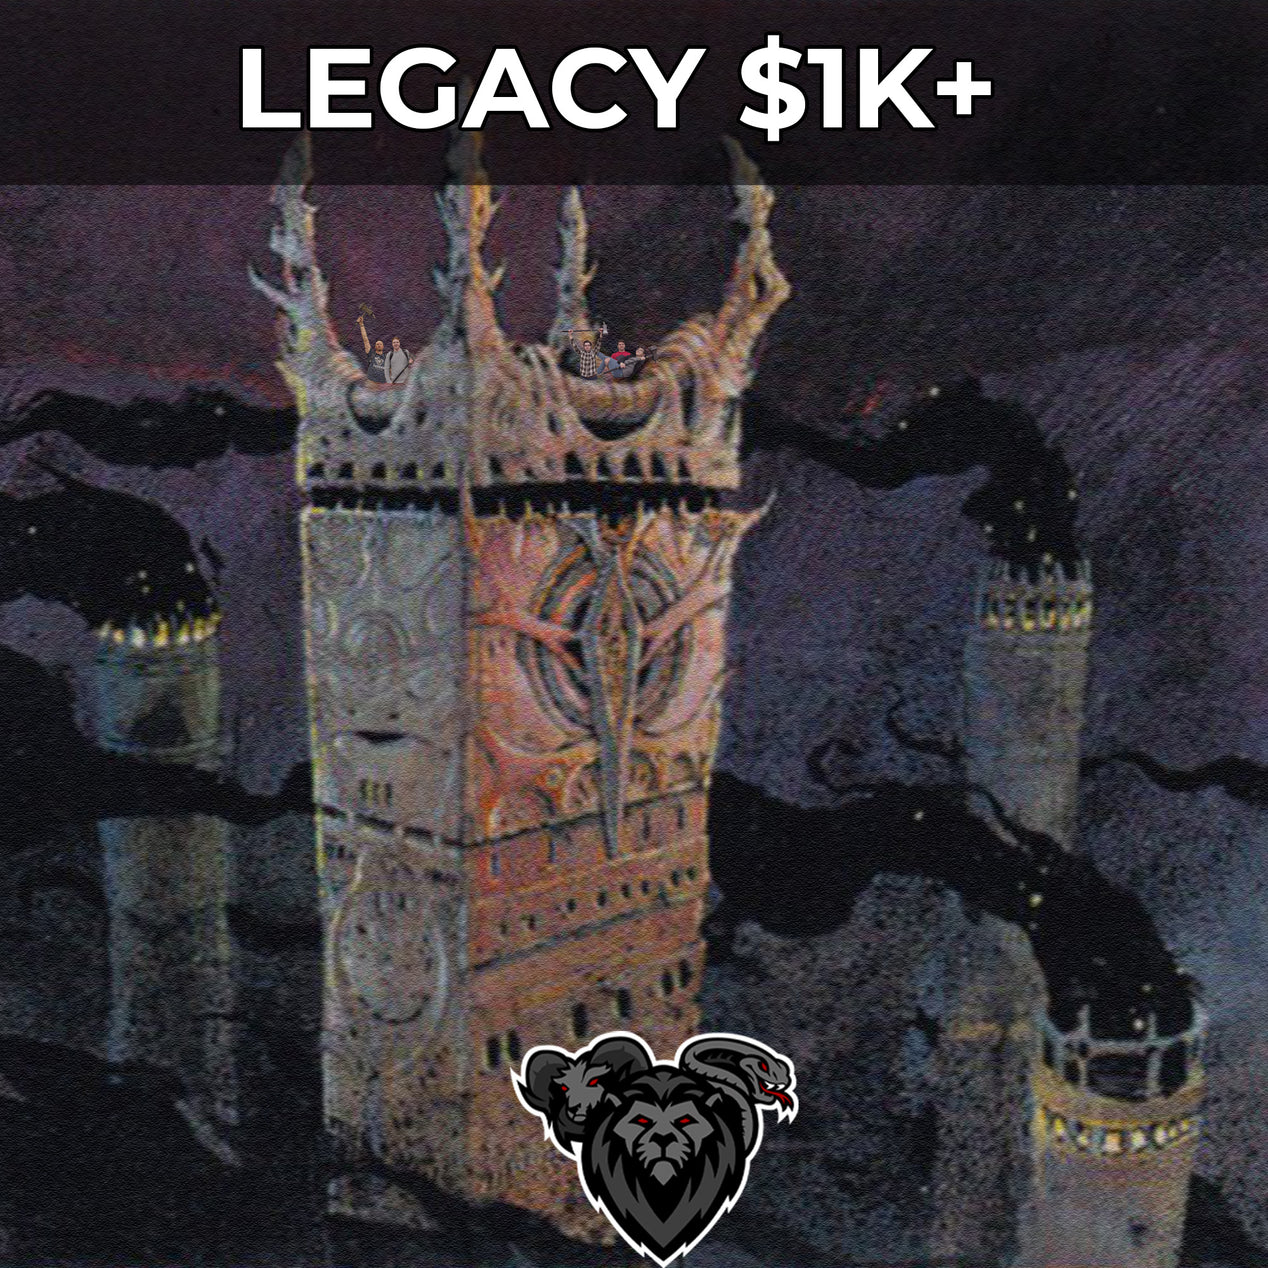 $1K+ Legacy Decklist, November 12th, 2023